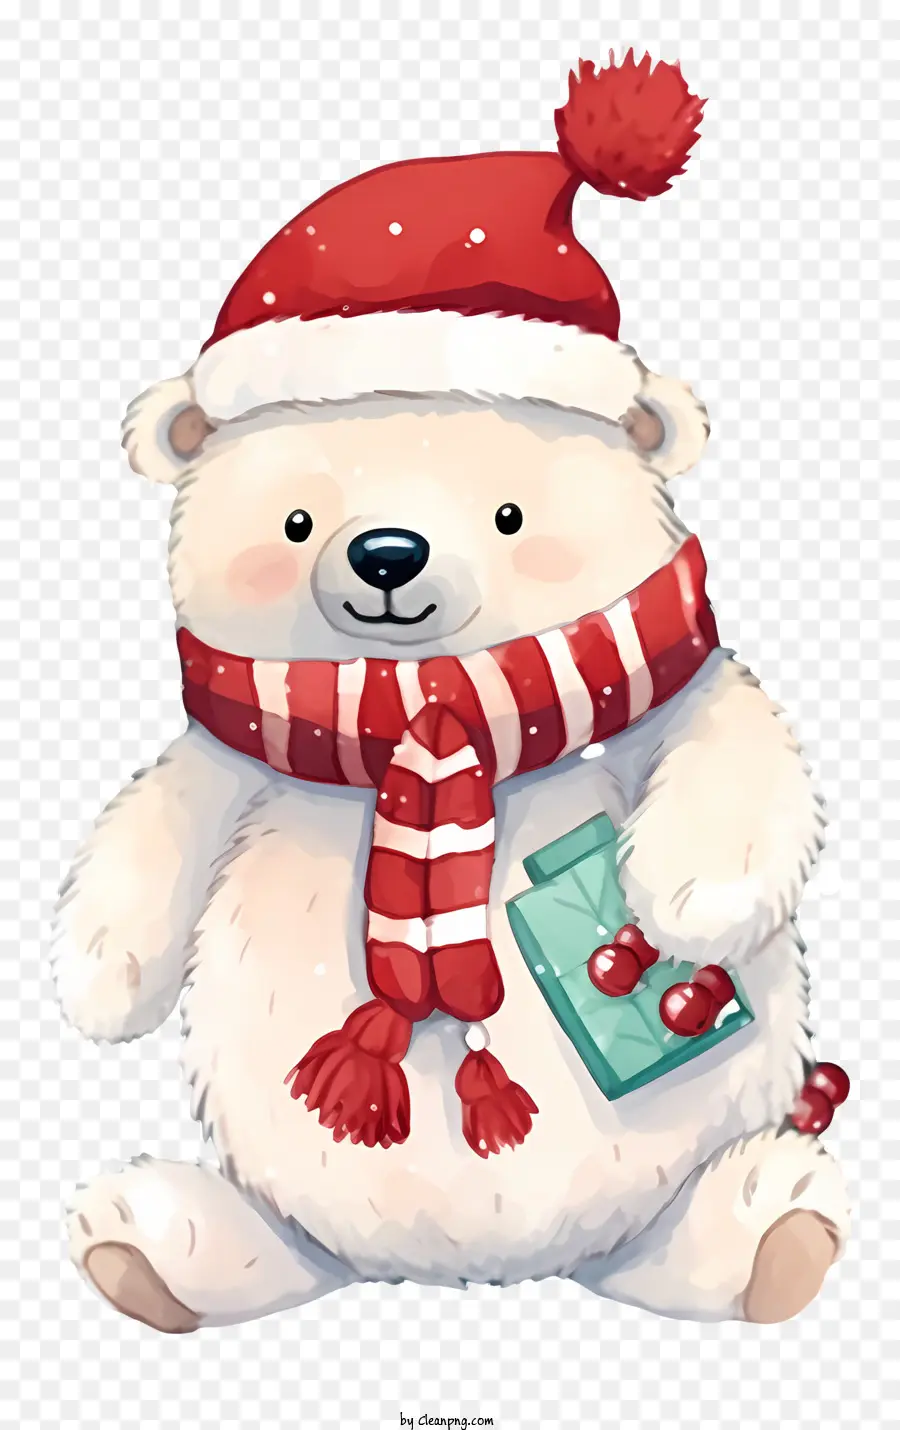 Polarbär Rot und Weiß gestreifter Schal Rot und weiß gestreifte Mütze Rot und Weiß gestreifter Hut Rot und Weiß gestreifte Krawatte - Festlicher Eisbär mit rot -weißen Accessoires